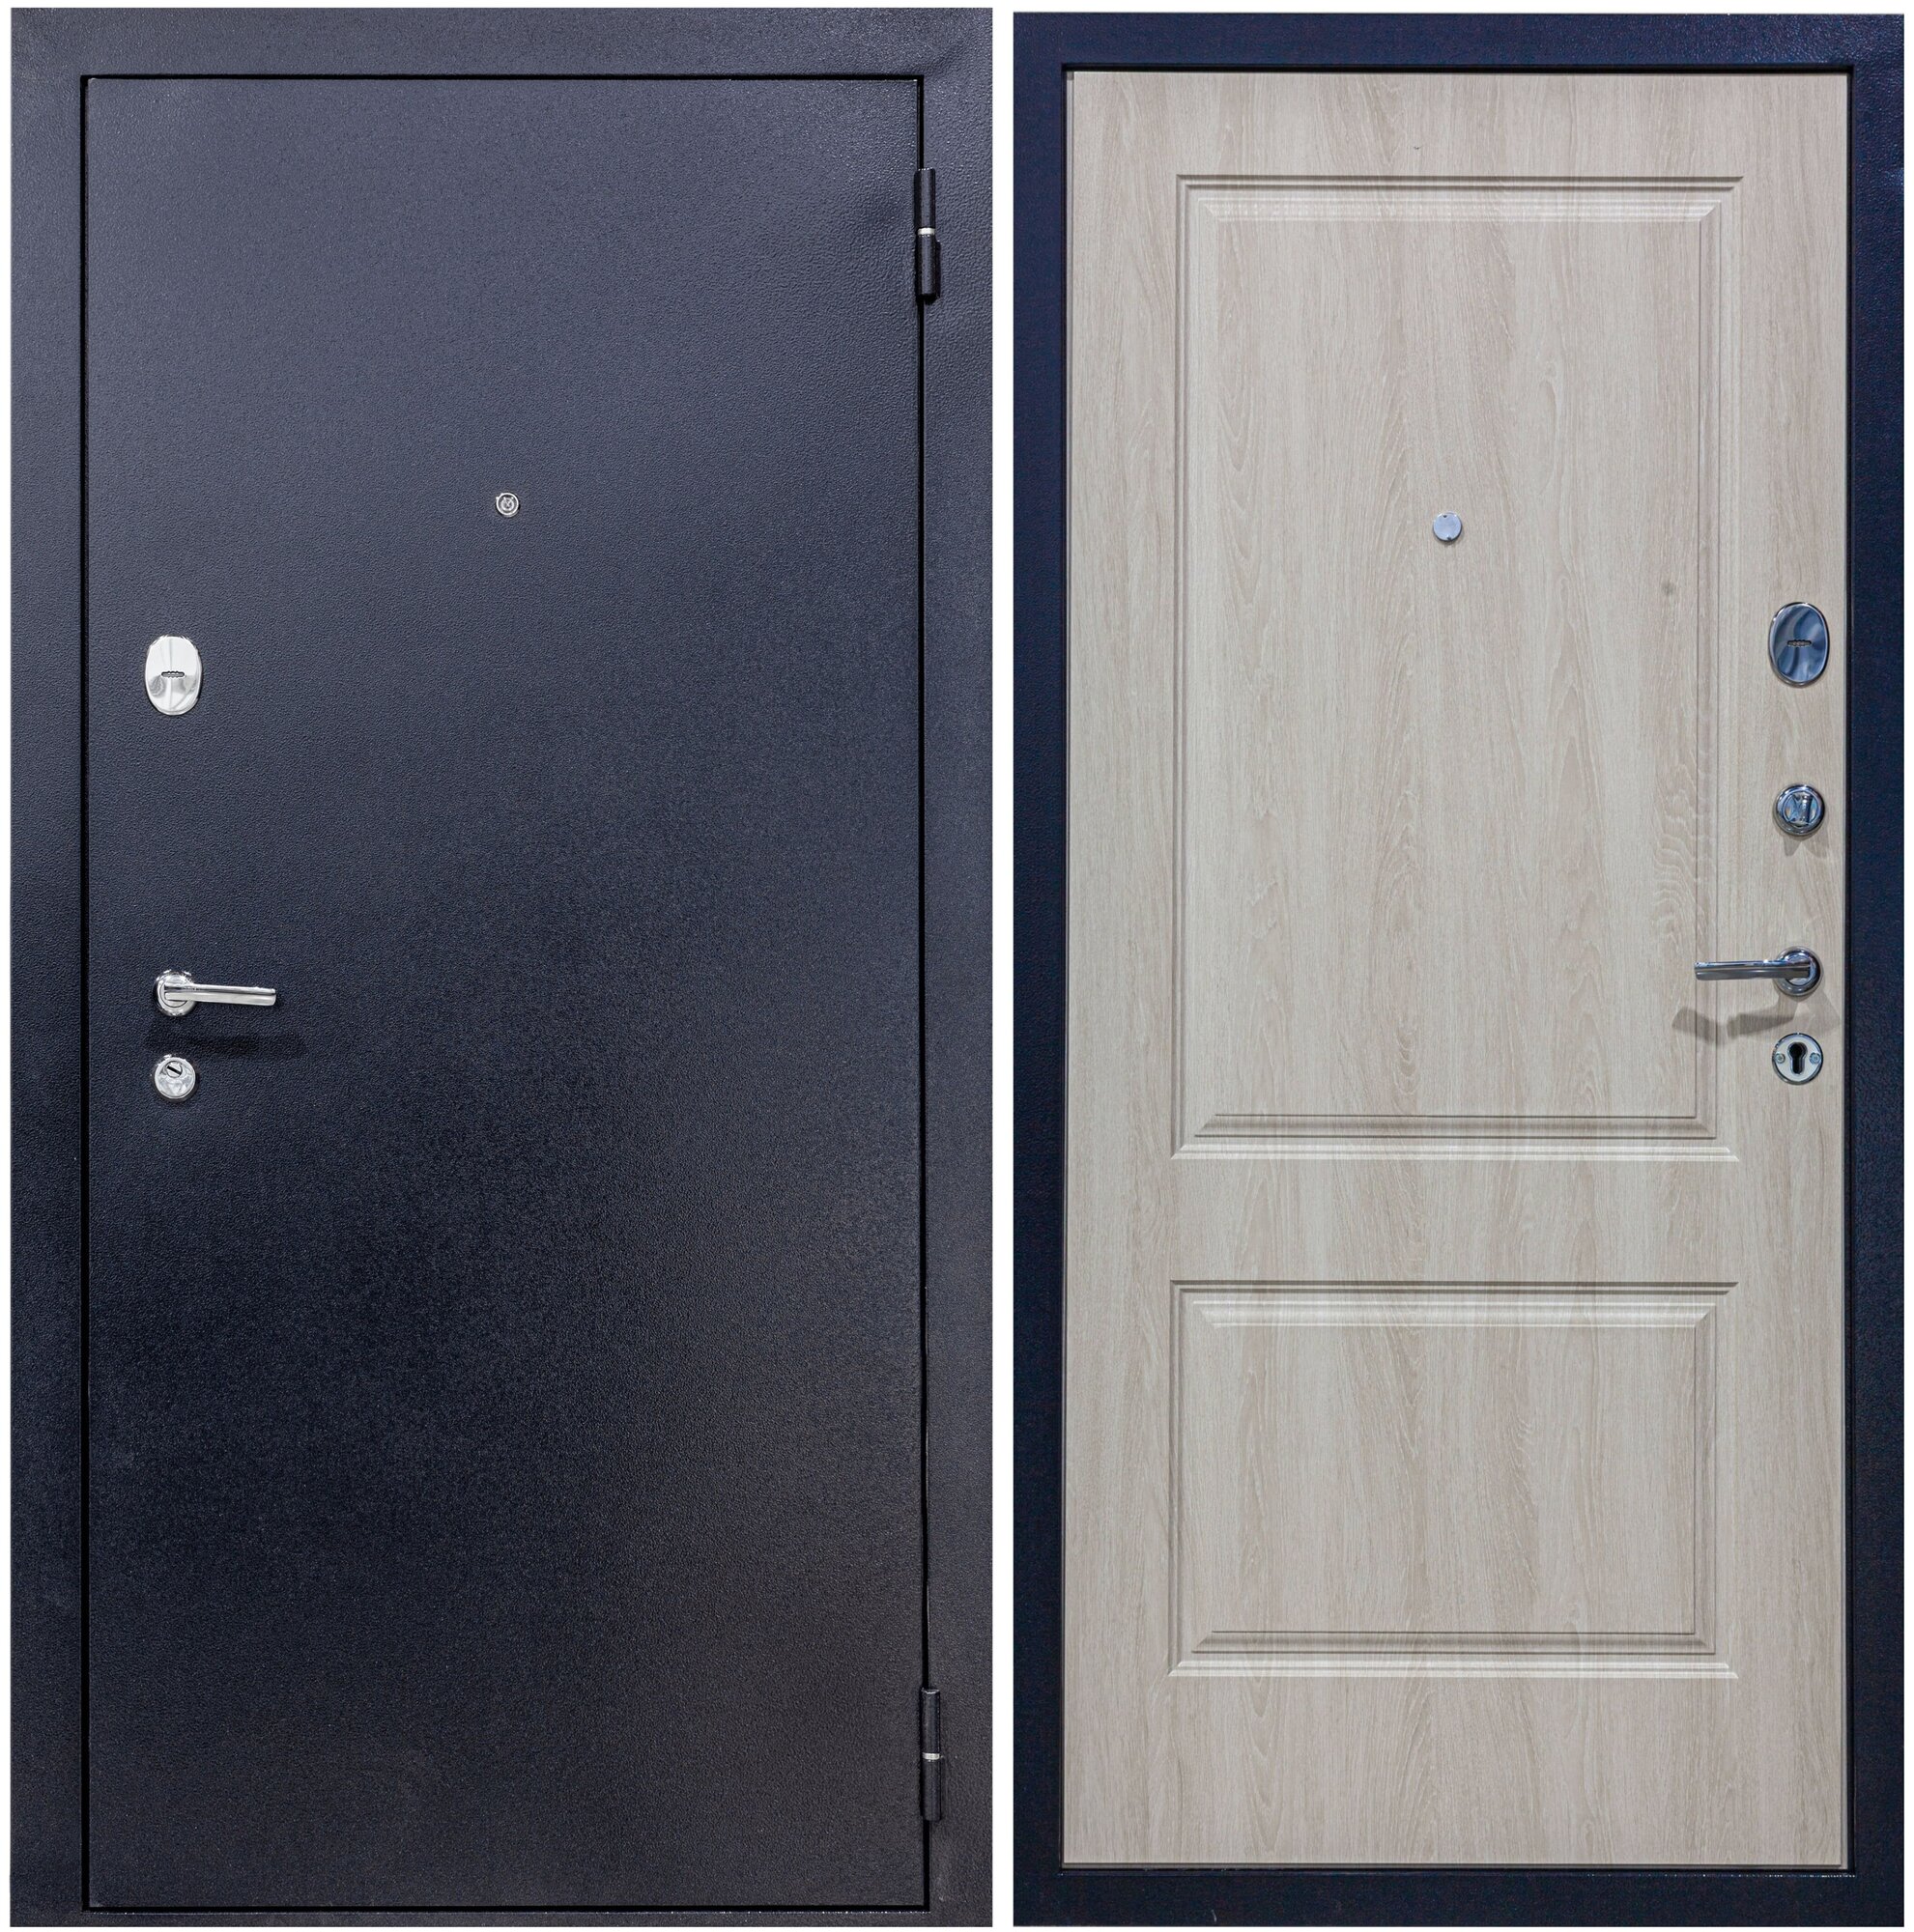 Дверь входная металлическая DIVA 510 2050х960 Правая Титан-Дуб фил крем, тепло-шумоизоляция, антикоррозийная защита для квартиры и дома